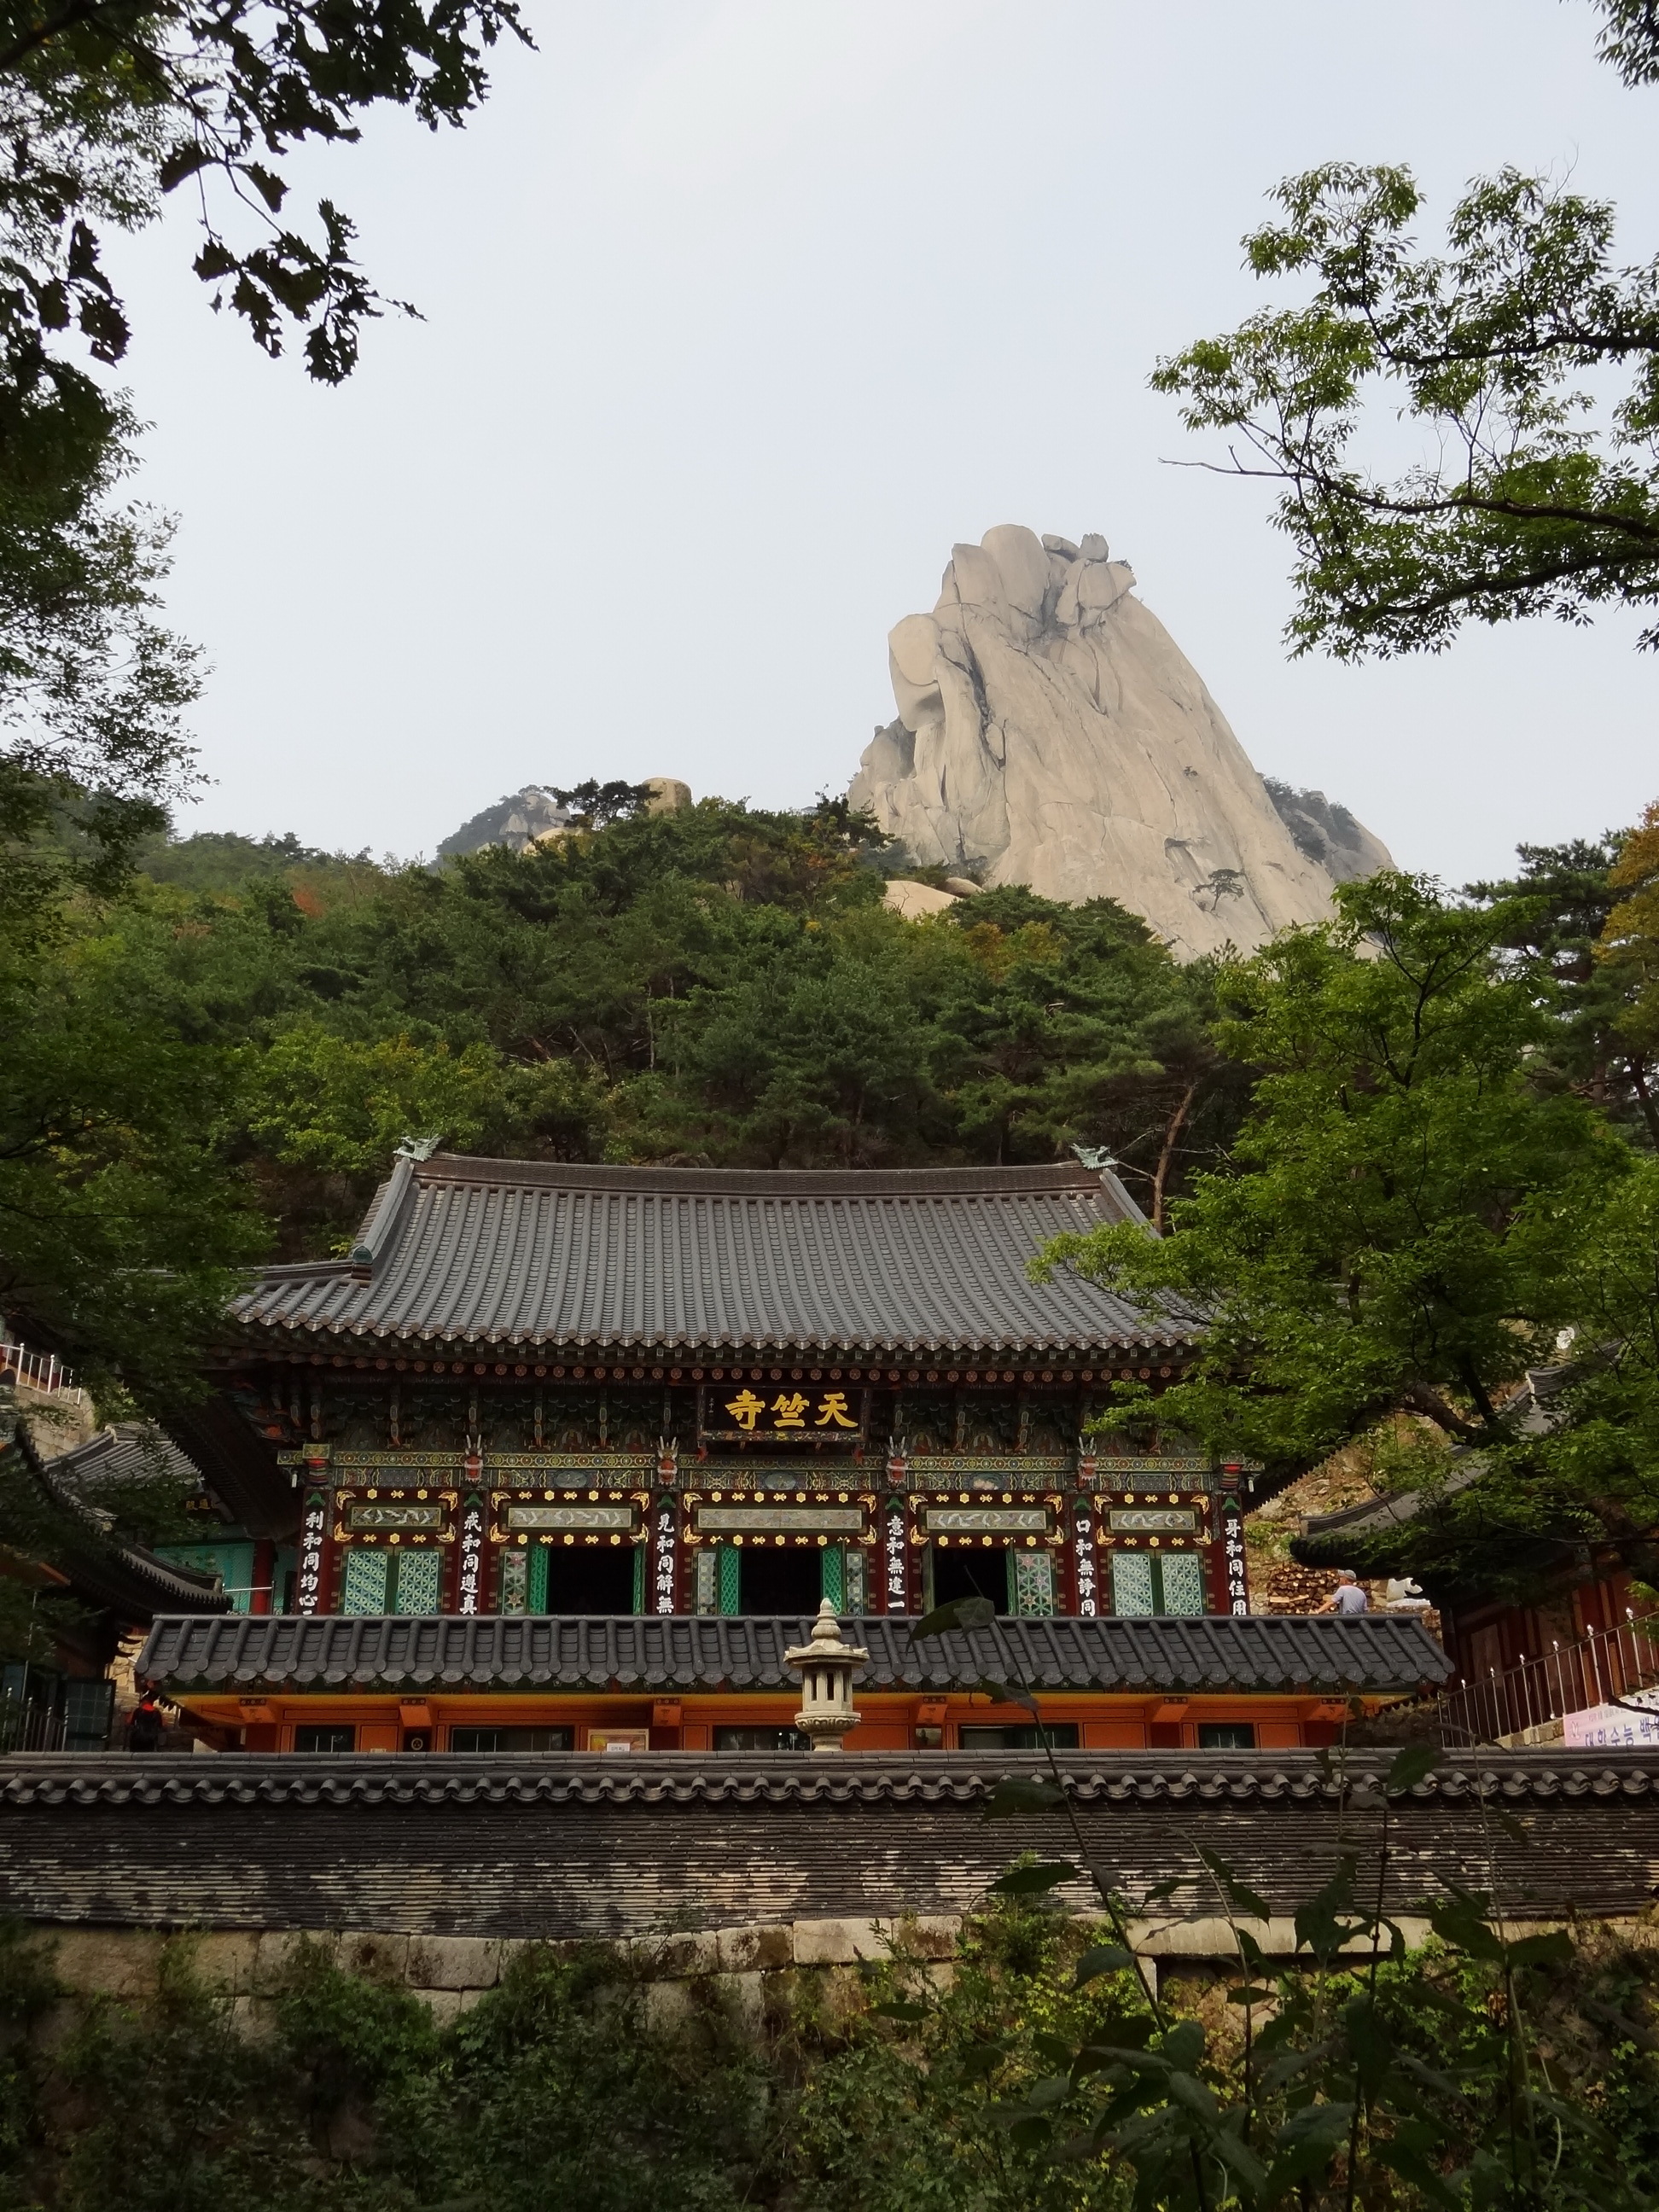 Seoul Mountain Temple